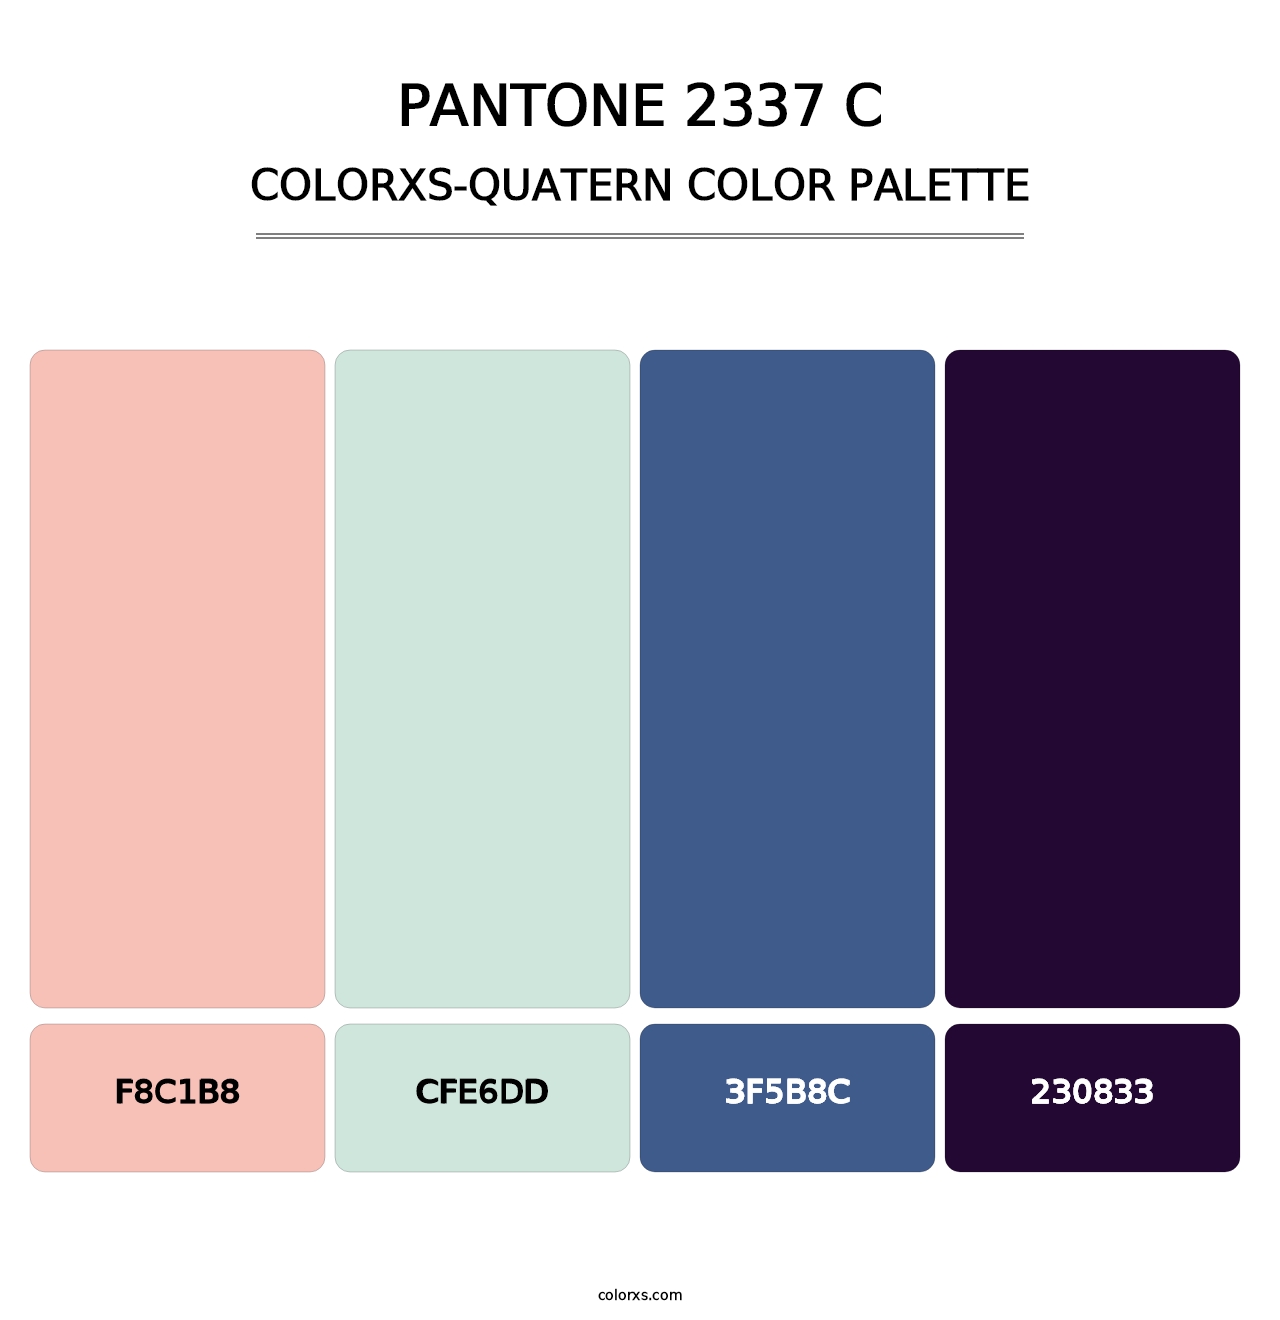 PANTONE 2337 C - Colorxs Quatern Palette